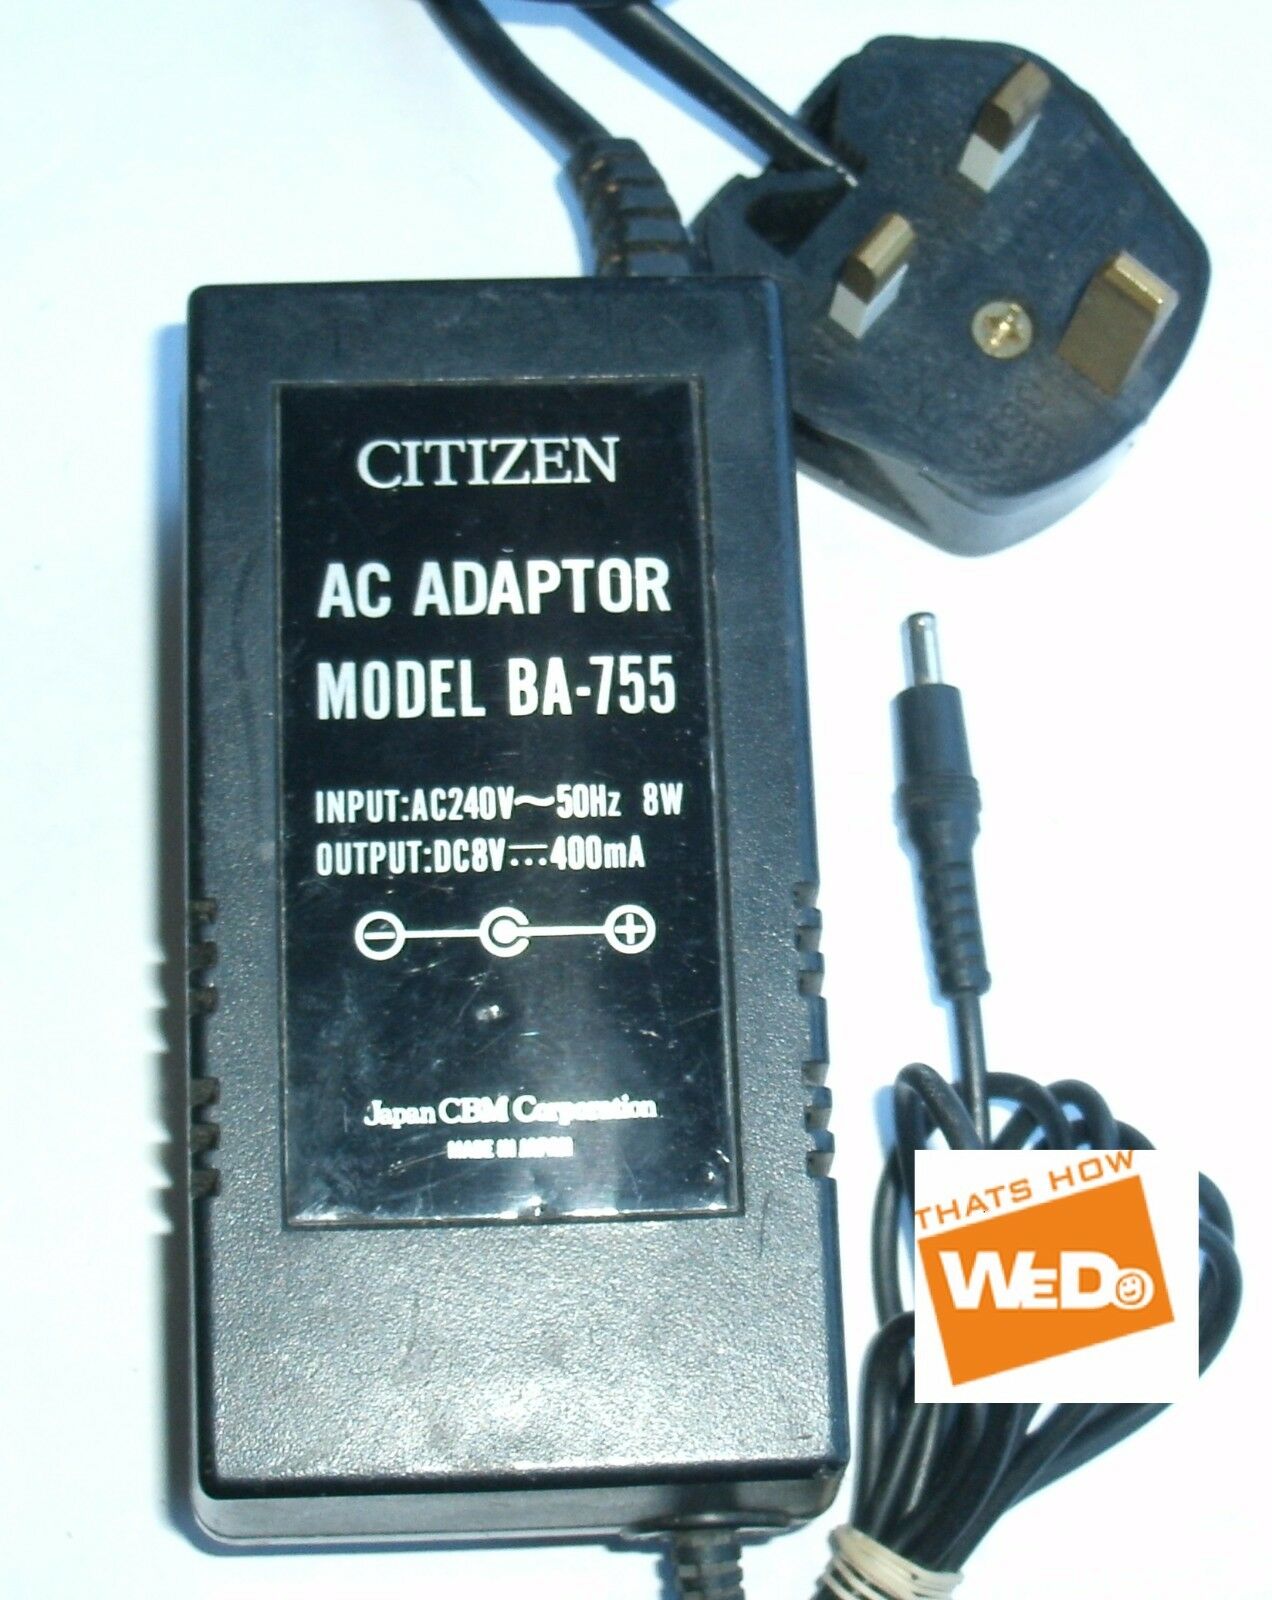 CITIZEN AC ADAPTOR BA-755 DC8V 400mA NEW Brand: Citizen Type: AC/Standard UPC: Does not apply A CITIZEN AC ADAPTOR